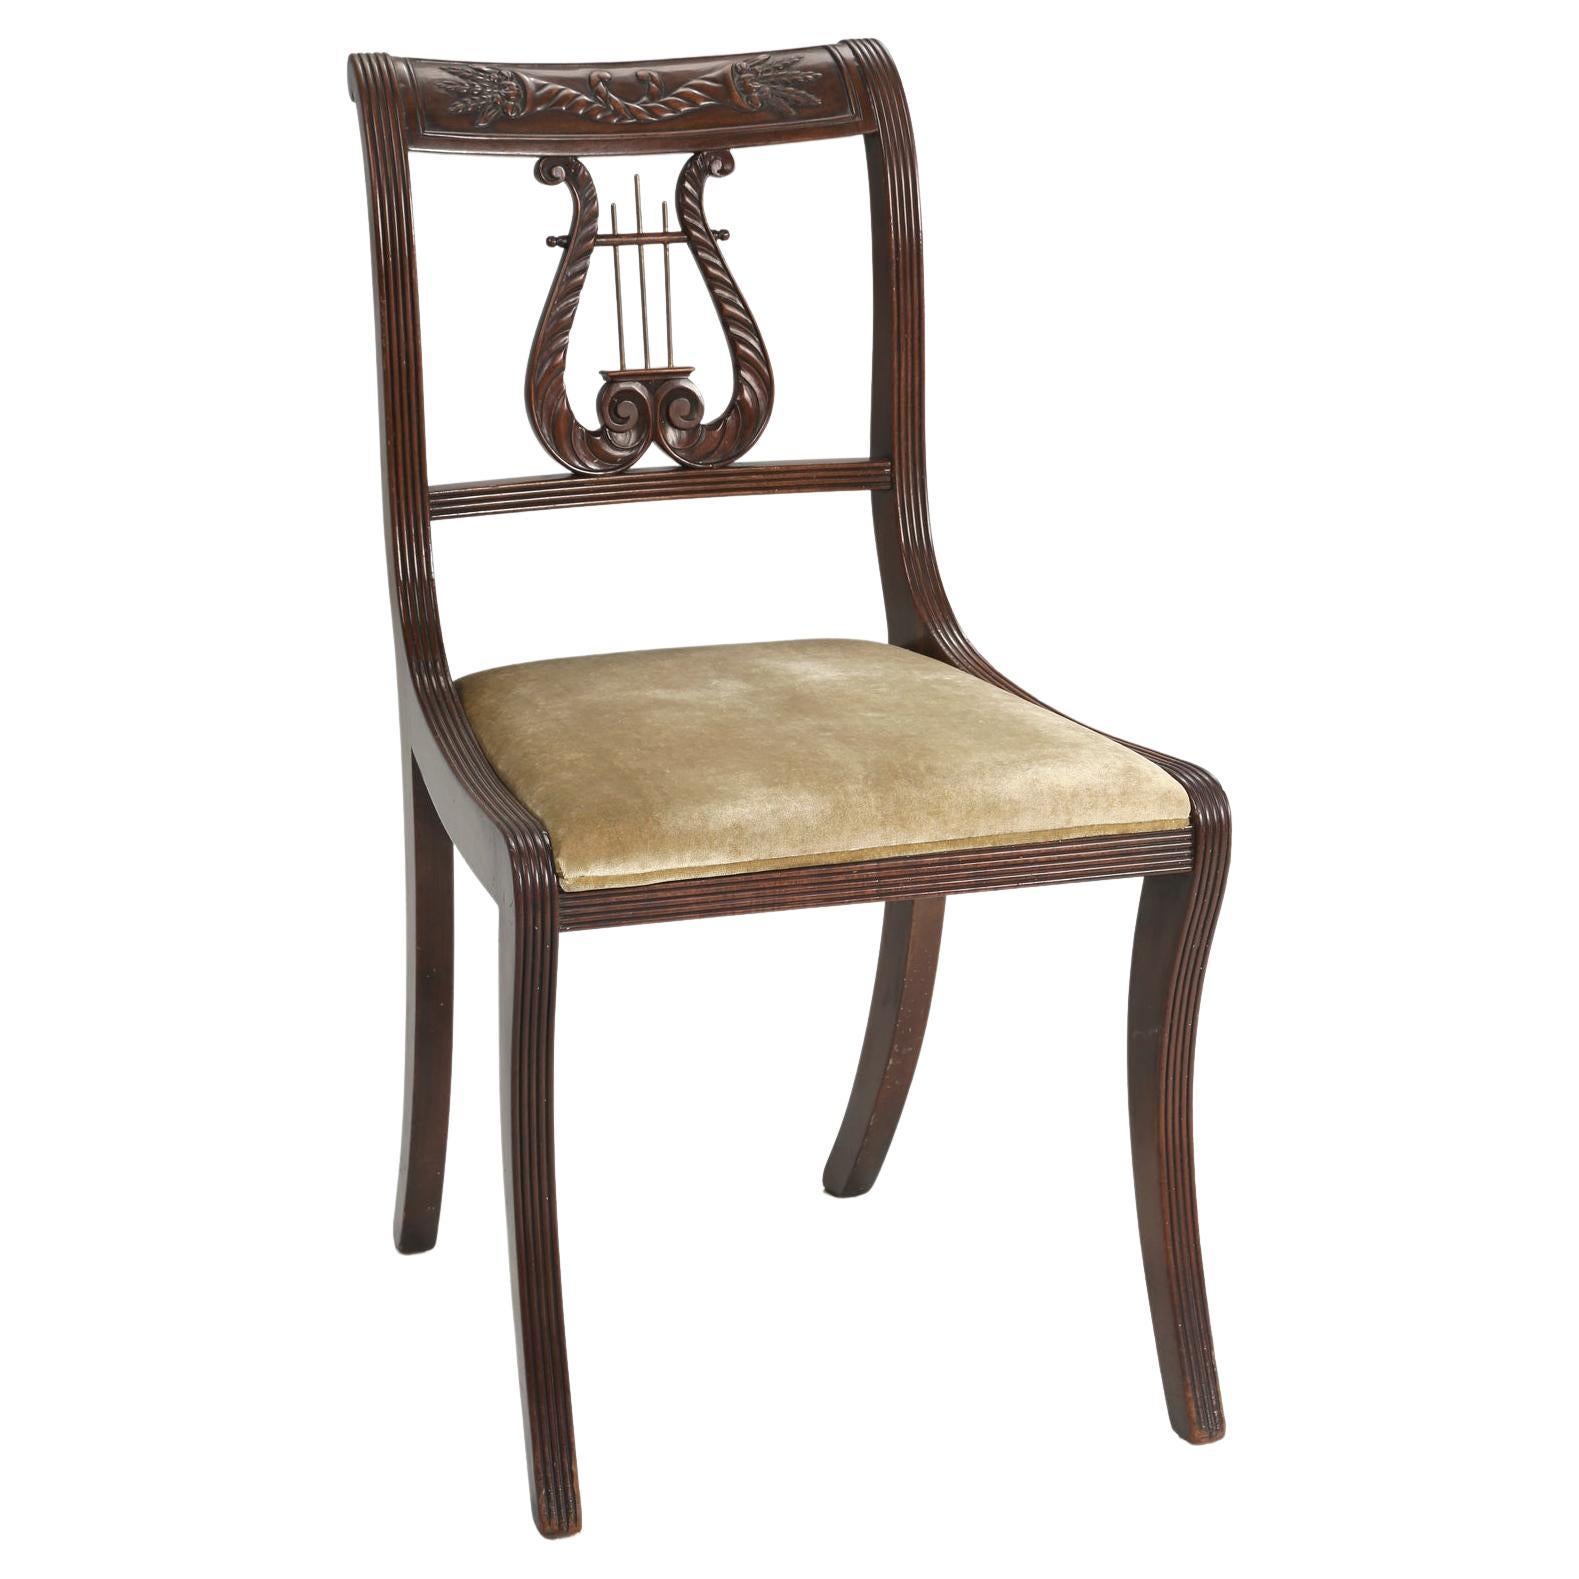 Chaise d'appoint anglaise ancienne à dossier en forme de lyre en acajou, restaurée, datant du milieu des années 1800 environ